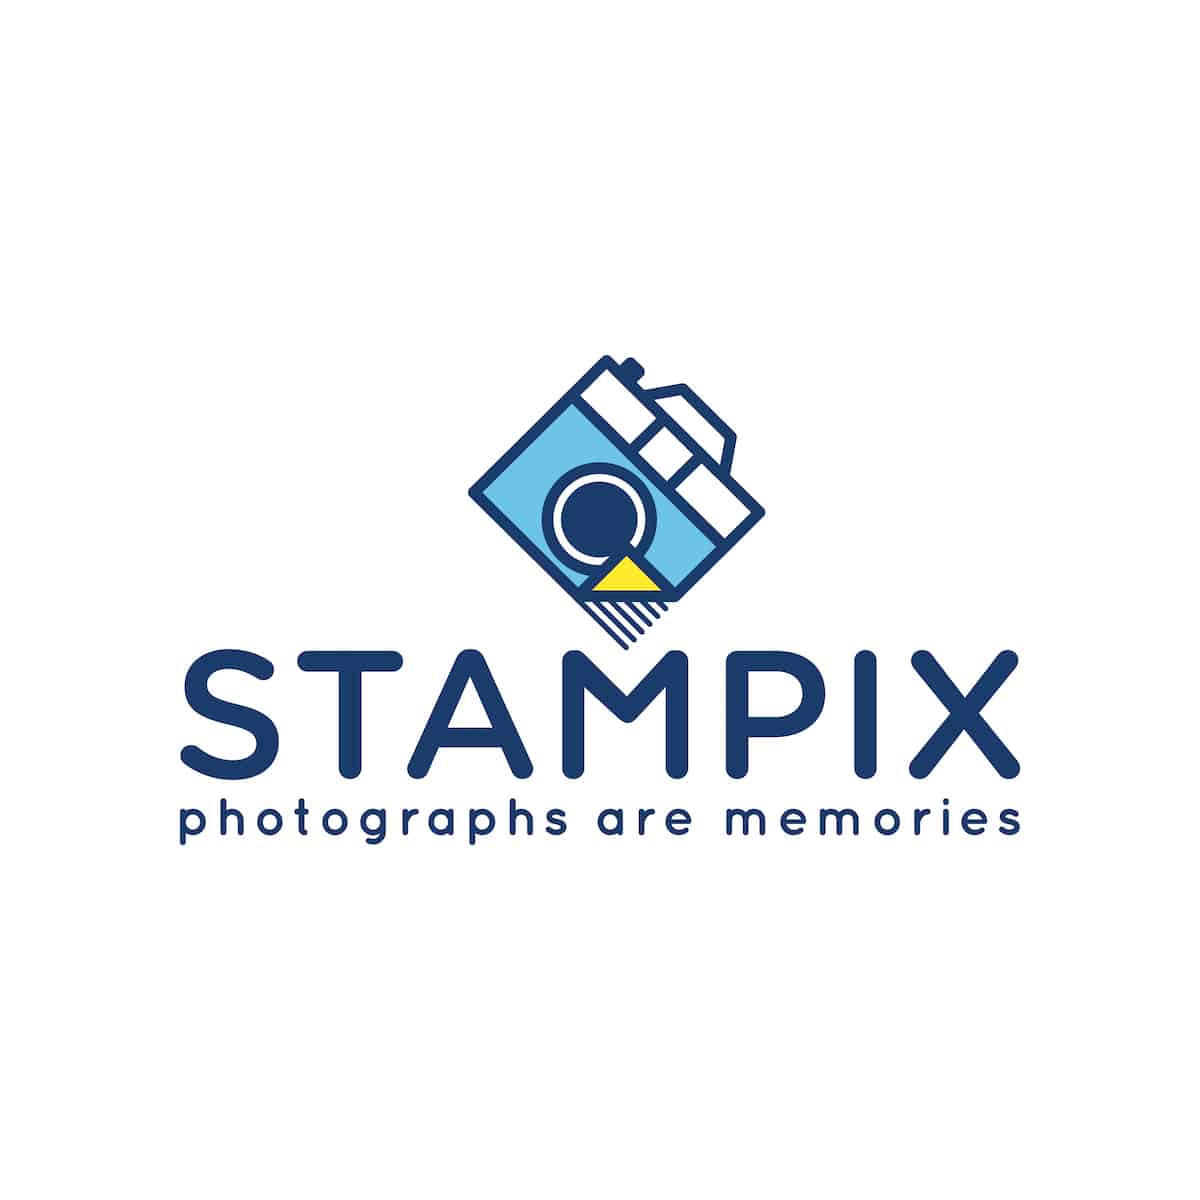 Stampix kortingscode : Vraag met deze code jouw gratis foto's aan!